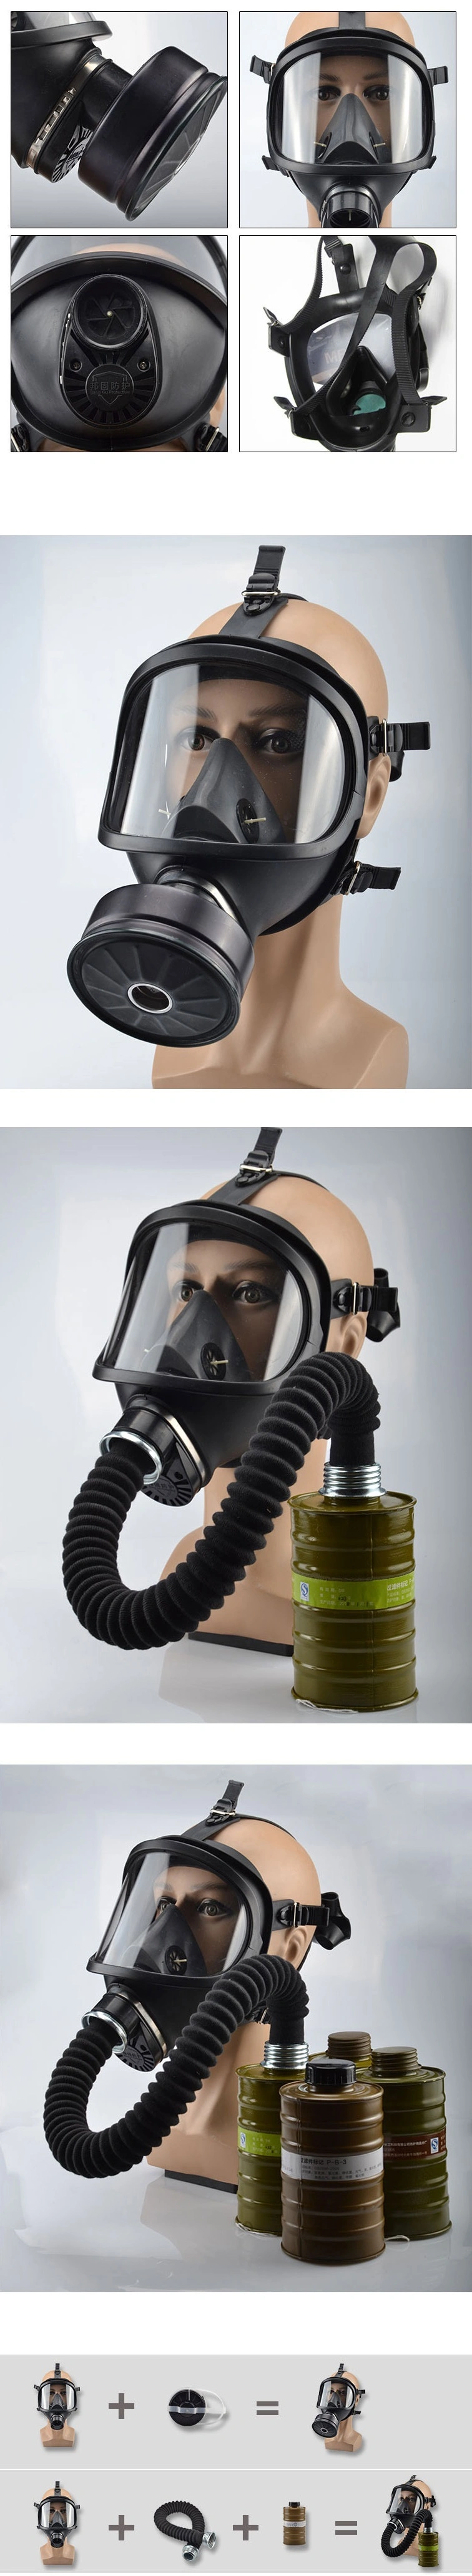 Mf14 Large Field of Vision Gas Mask Anti-Virus Smoke Gas Full Face Black Filter Respirator